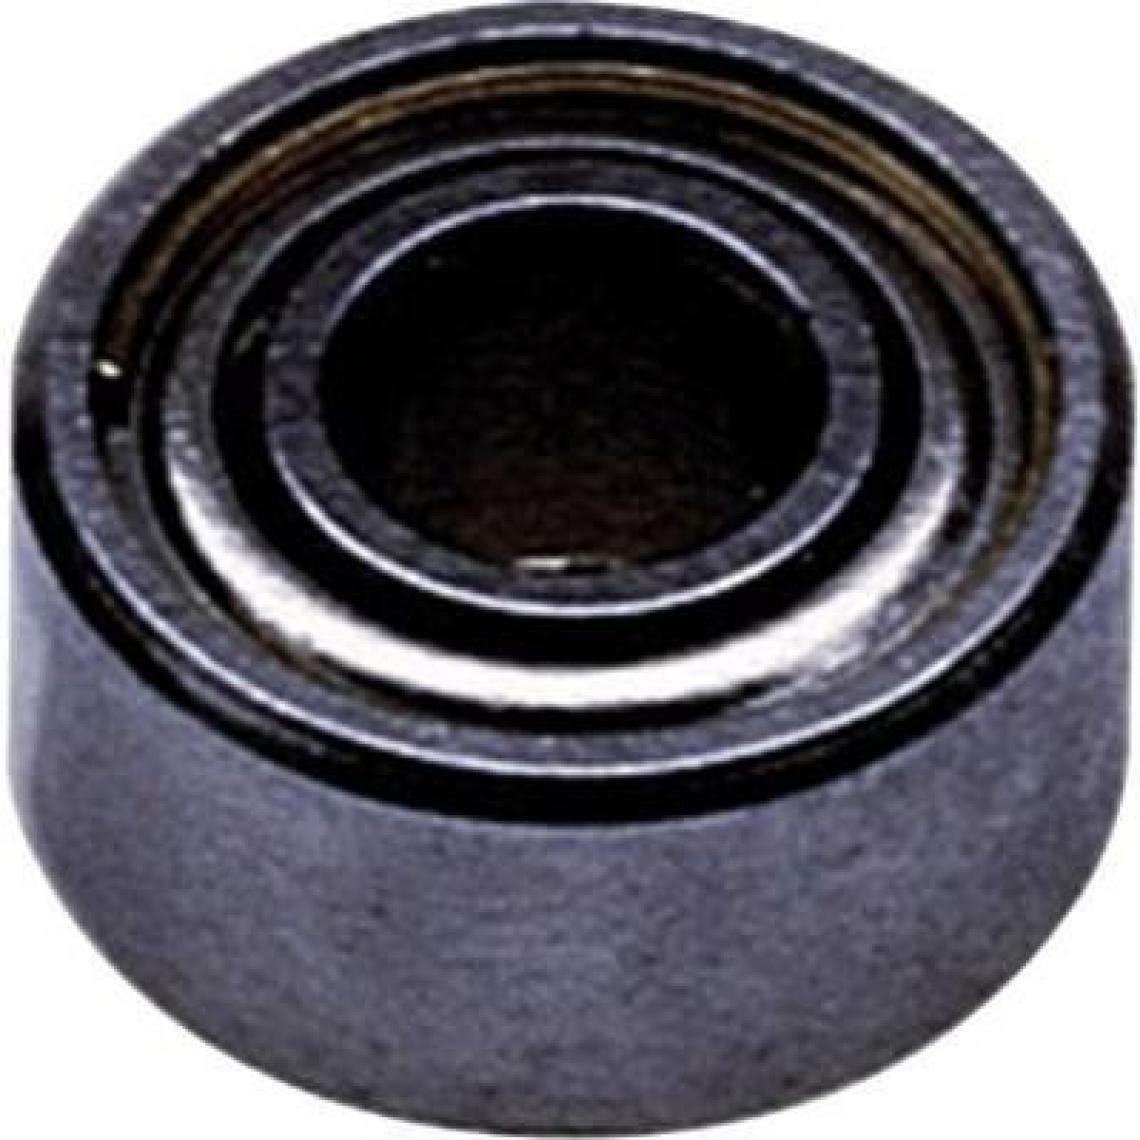 Inconnu - Reely Roulement Radial en acier inoxydable Diamètre intérieurâ€¯: 10 mm – Diamètre extérieurâ€¯: 19 mm Vitesse (Max.)â€¯: 41000 tr/min - Accessoires et pièces